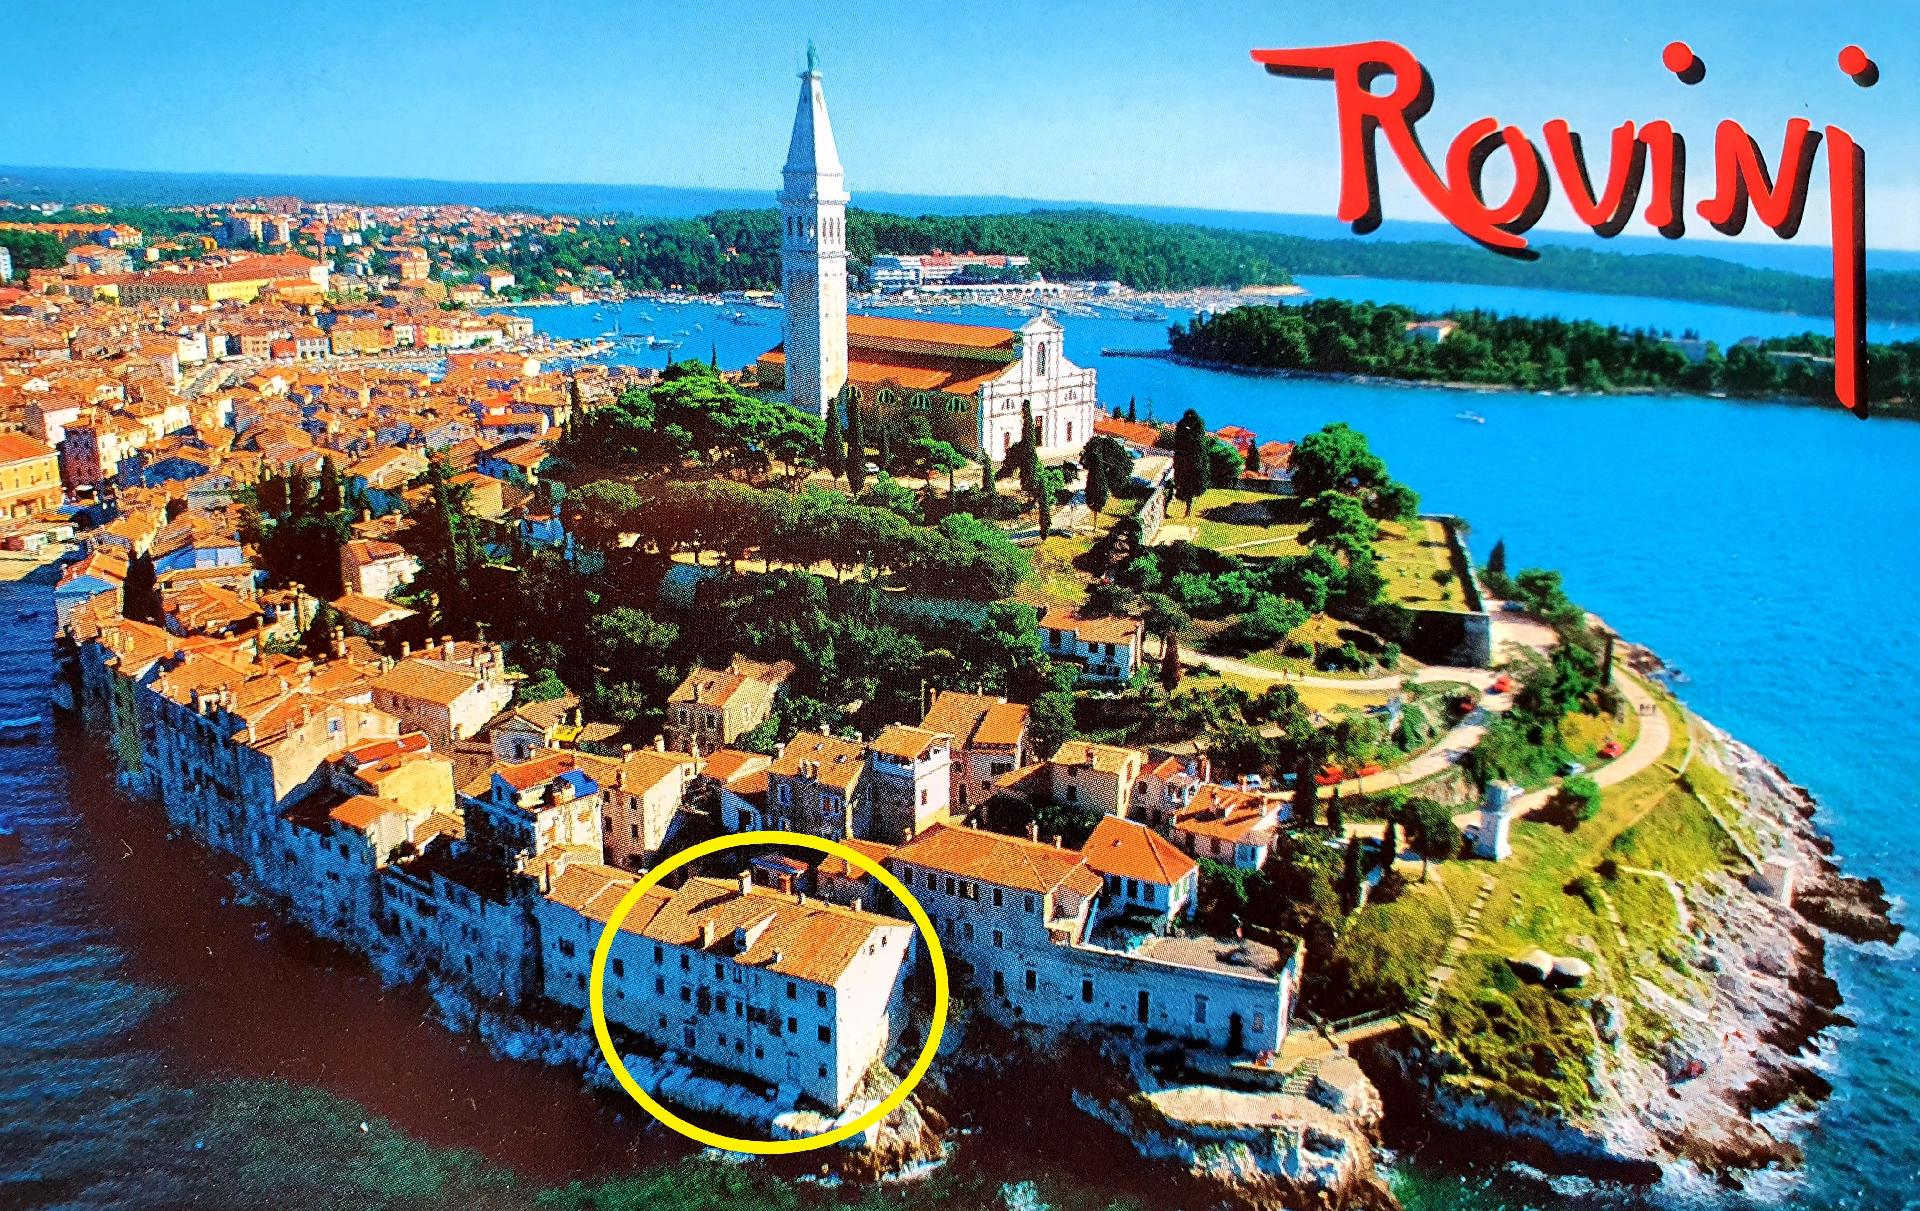 Appartement in Rovinj und Meerblick  in Kroatien